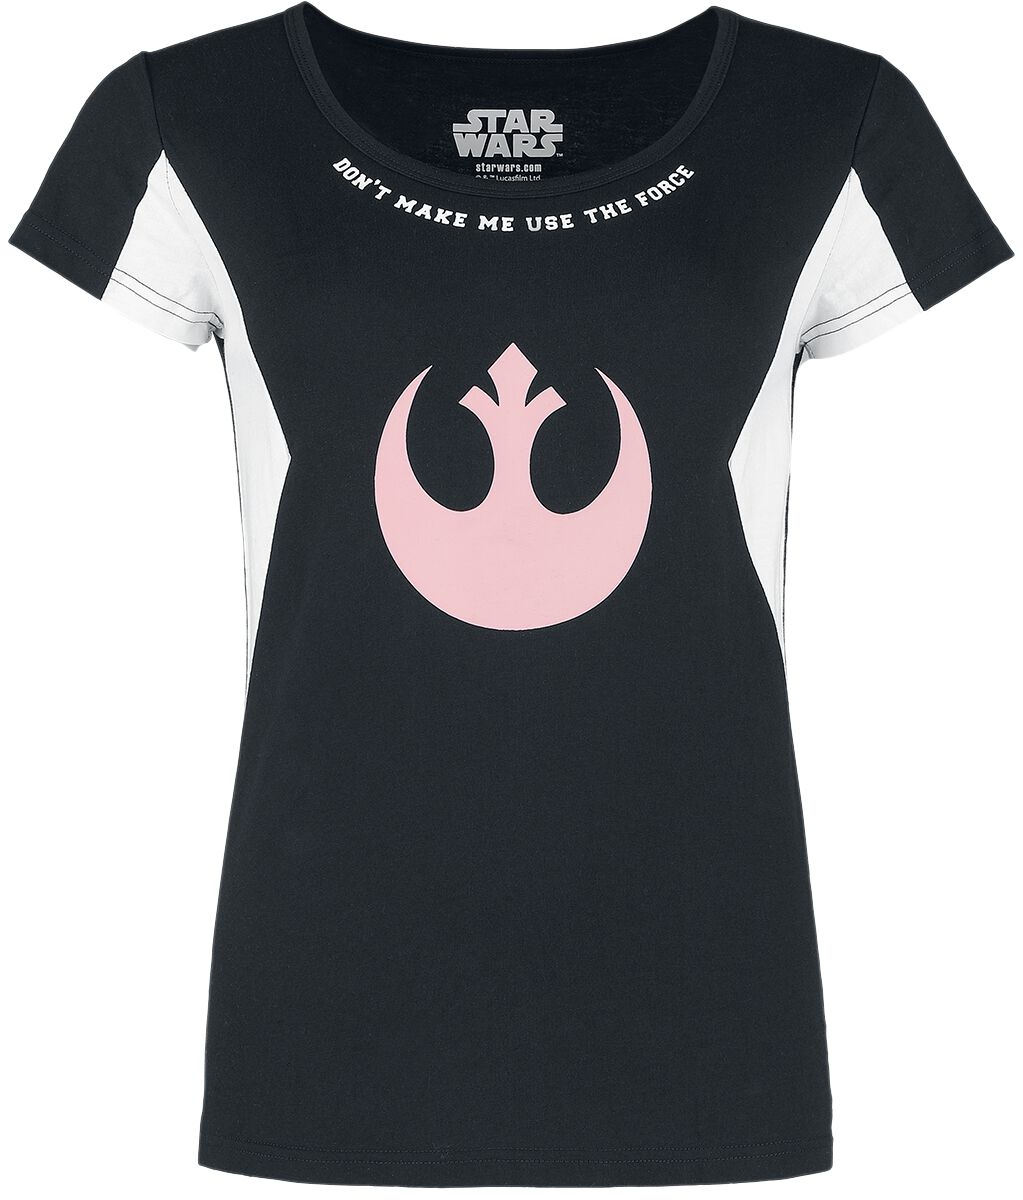 Star Wars T-Shirt - S bis M - für Damen - Größe S - schwarz/weiß  - EMP exklusives Merchandise! von Star Wars